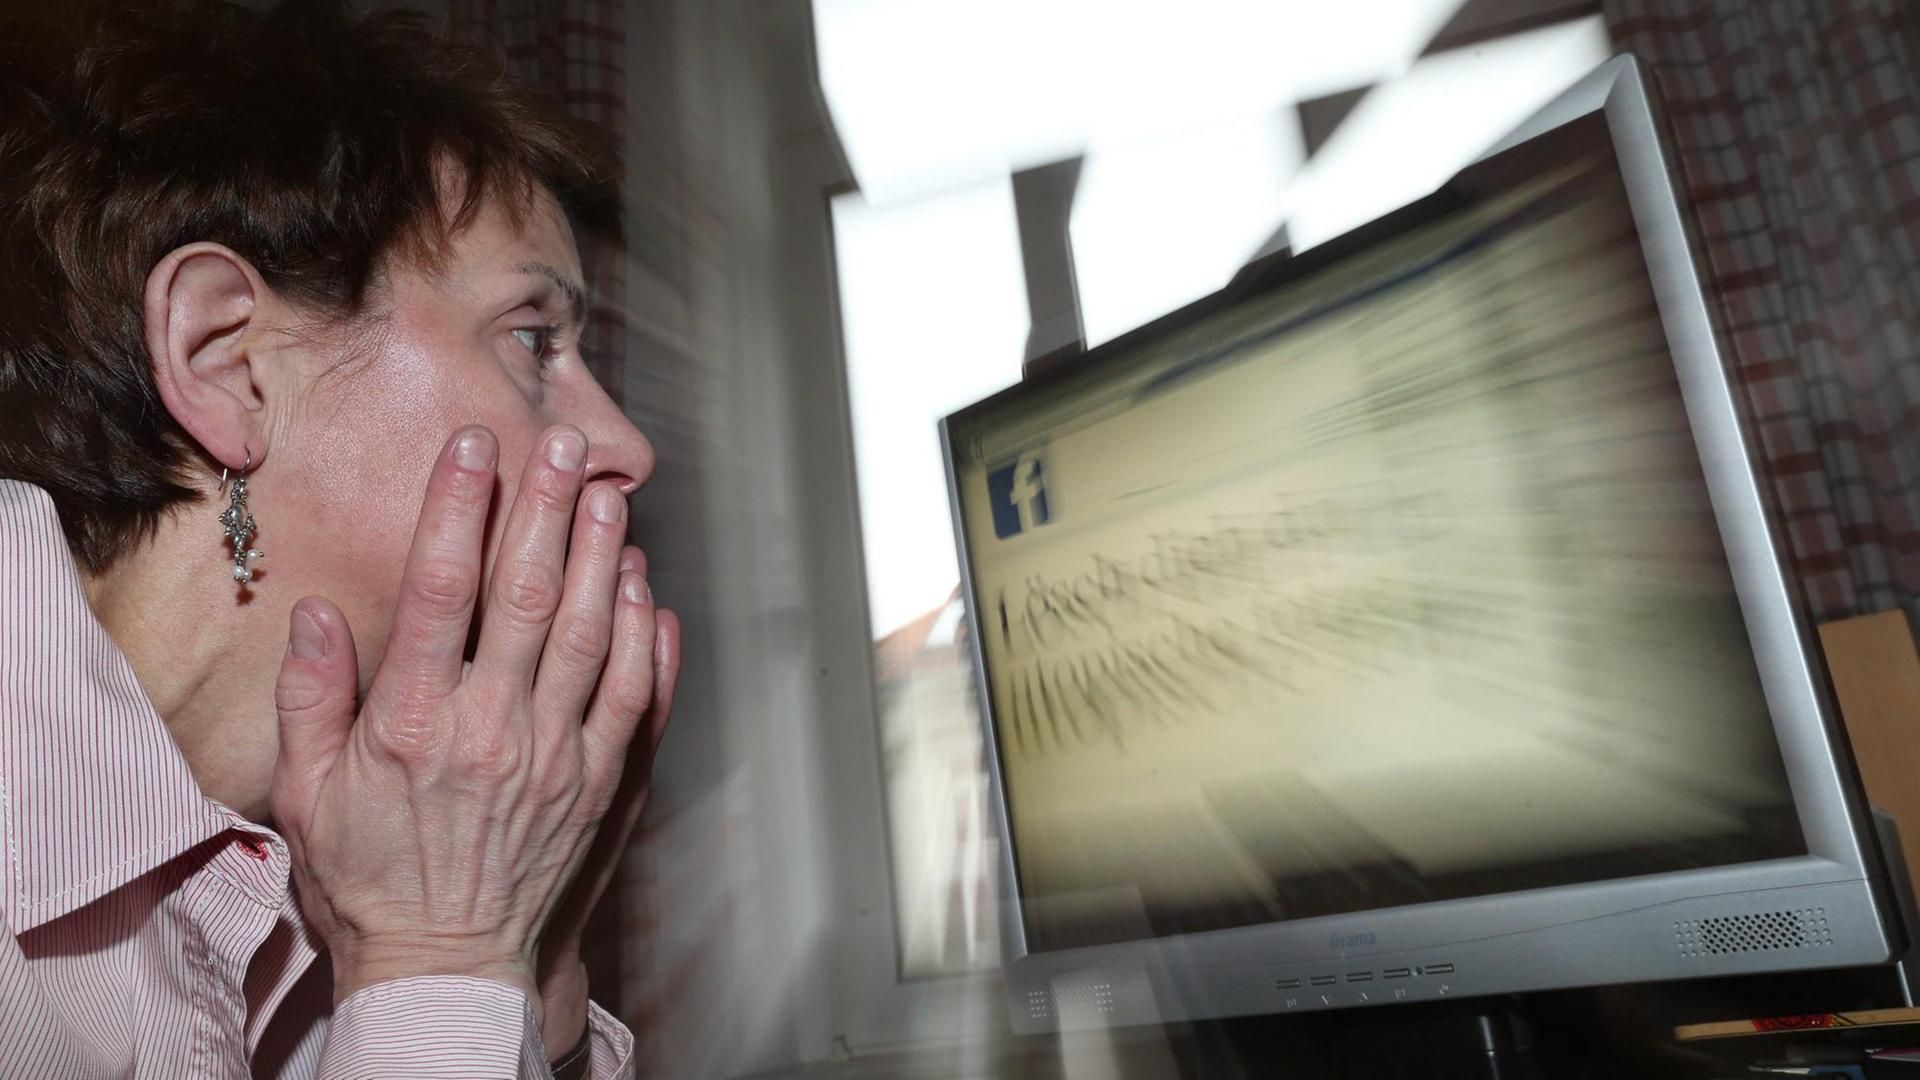 Frau vor einem Bildschirm mit Facebook-Logo